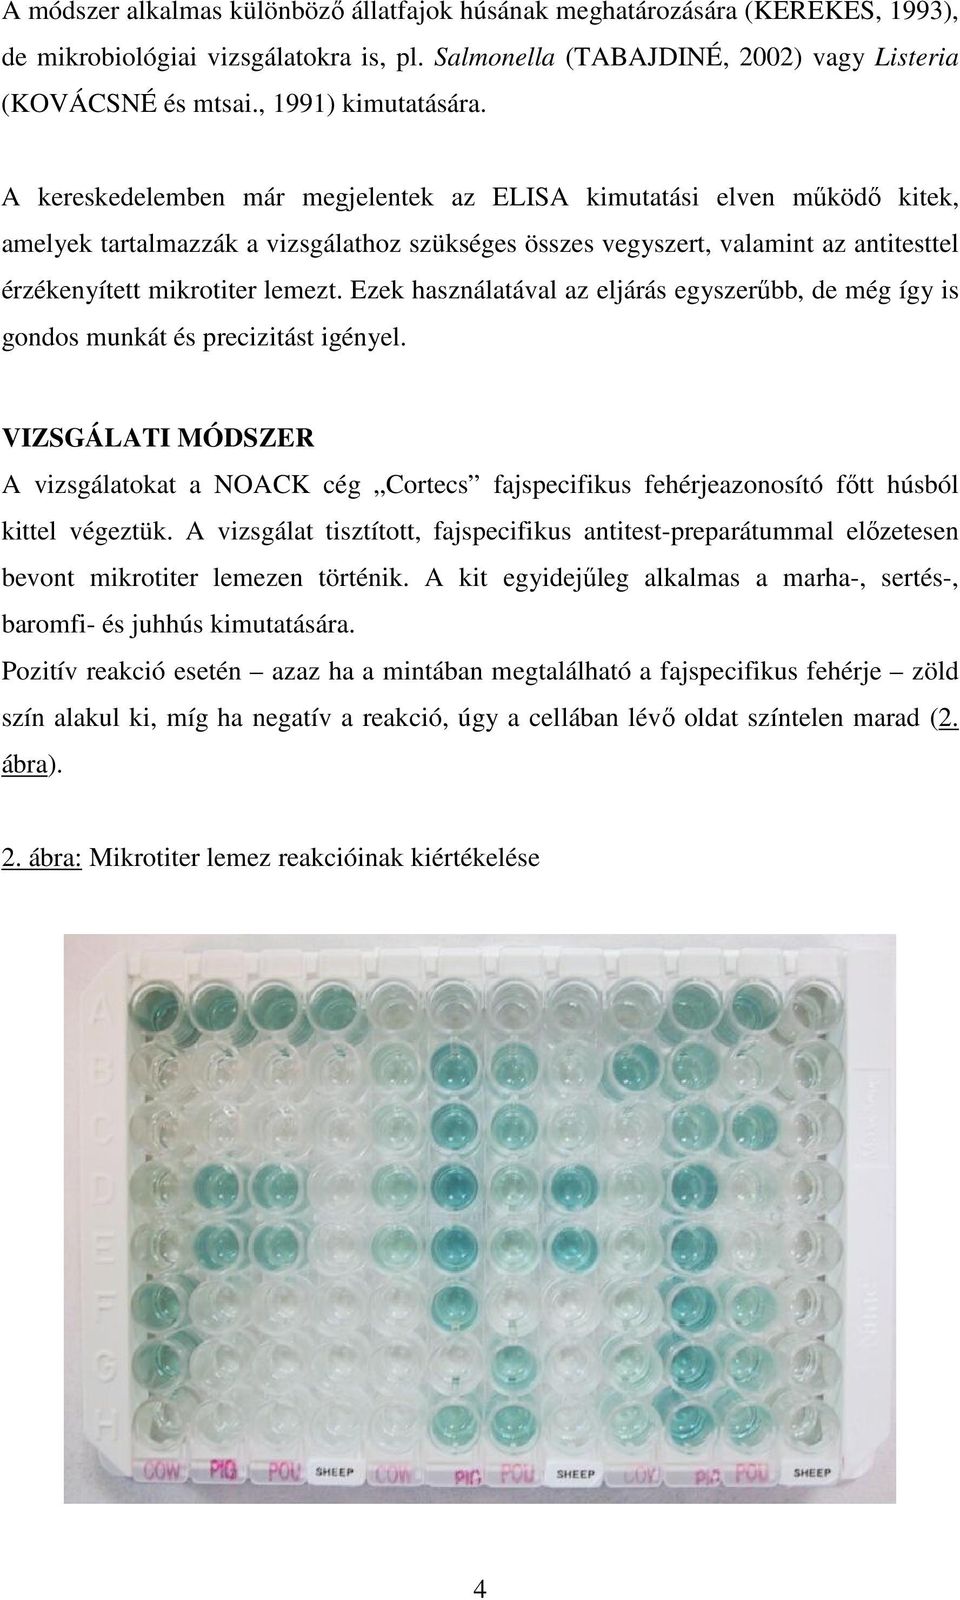 A kereskedelemben már megjelentek az ELISA kimutatási elven mőködı kitek, amelyek tartalmazzák a vizsgálathoz szükséges összes vegyszert, valamint az antitesttel érzékenyített mikrotiter lemezt.